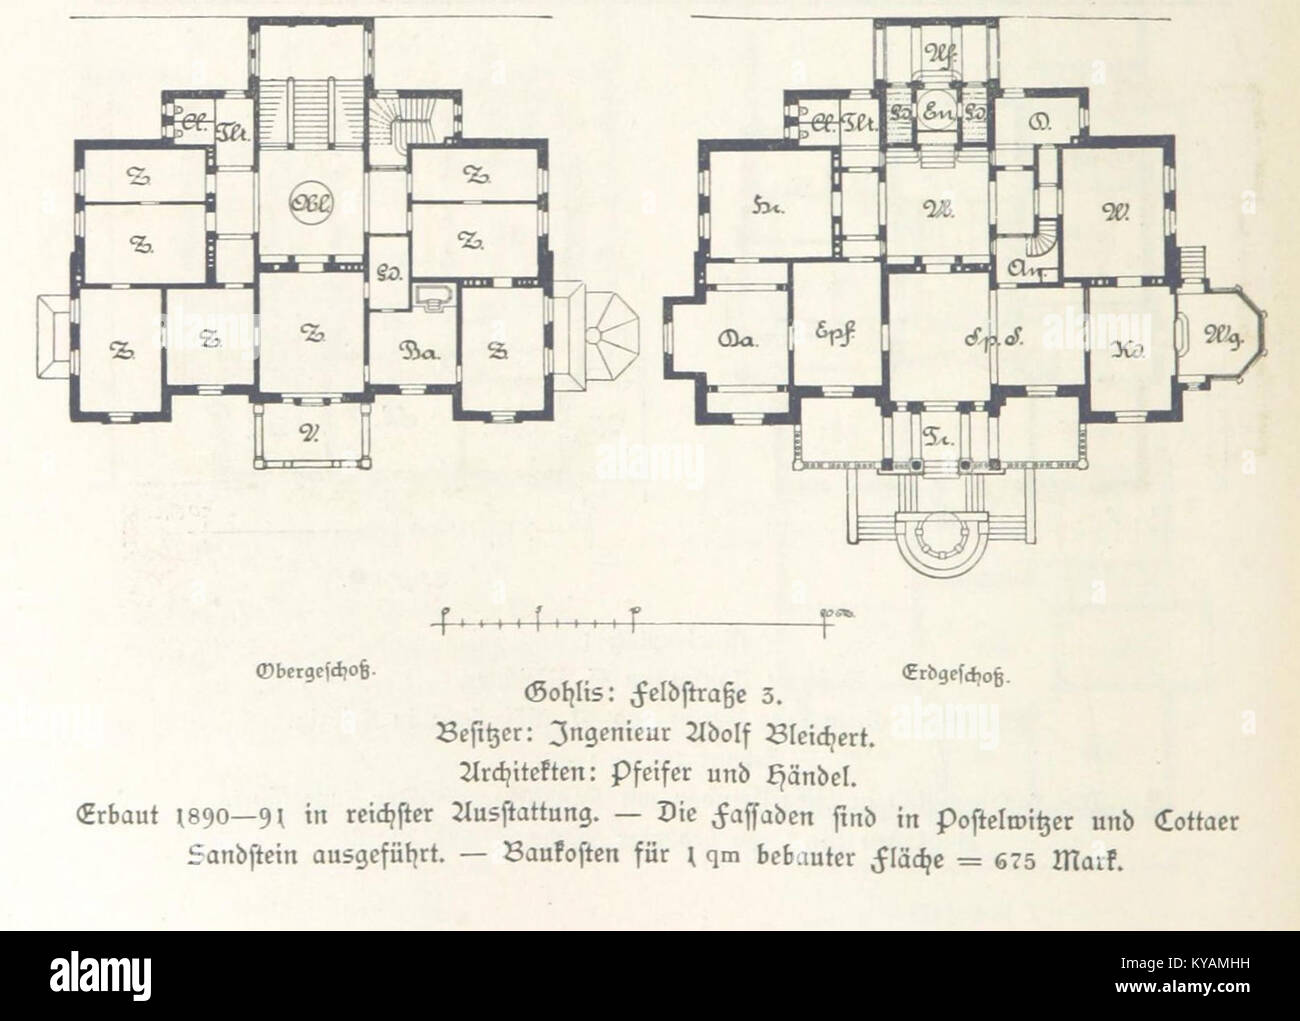 Villa Hilda (Leipzig, Lützowstraße 19) Adolf Bleichert (Pfeifer & Händel) Grundriss - leipzig und seine bauten (1892), S. 376 Stock Photo